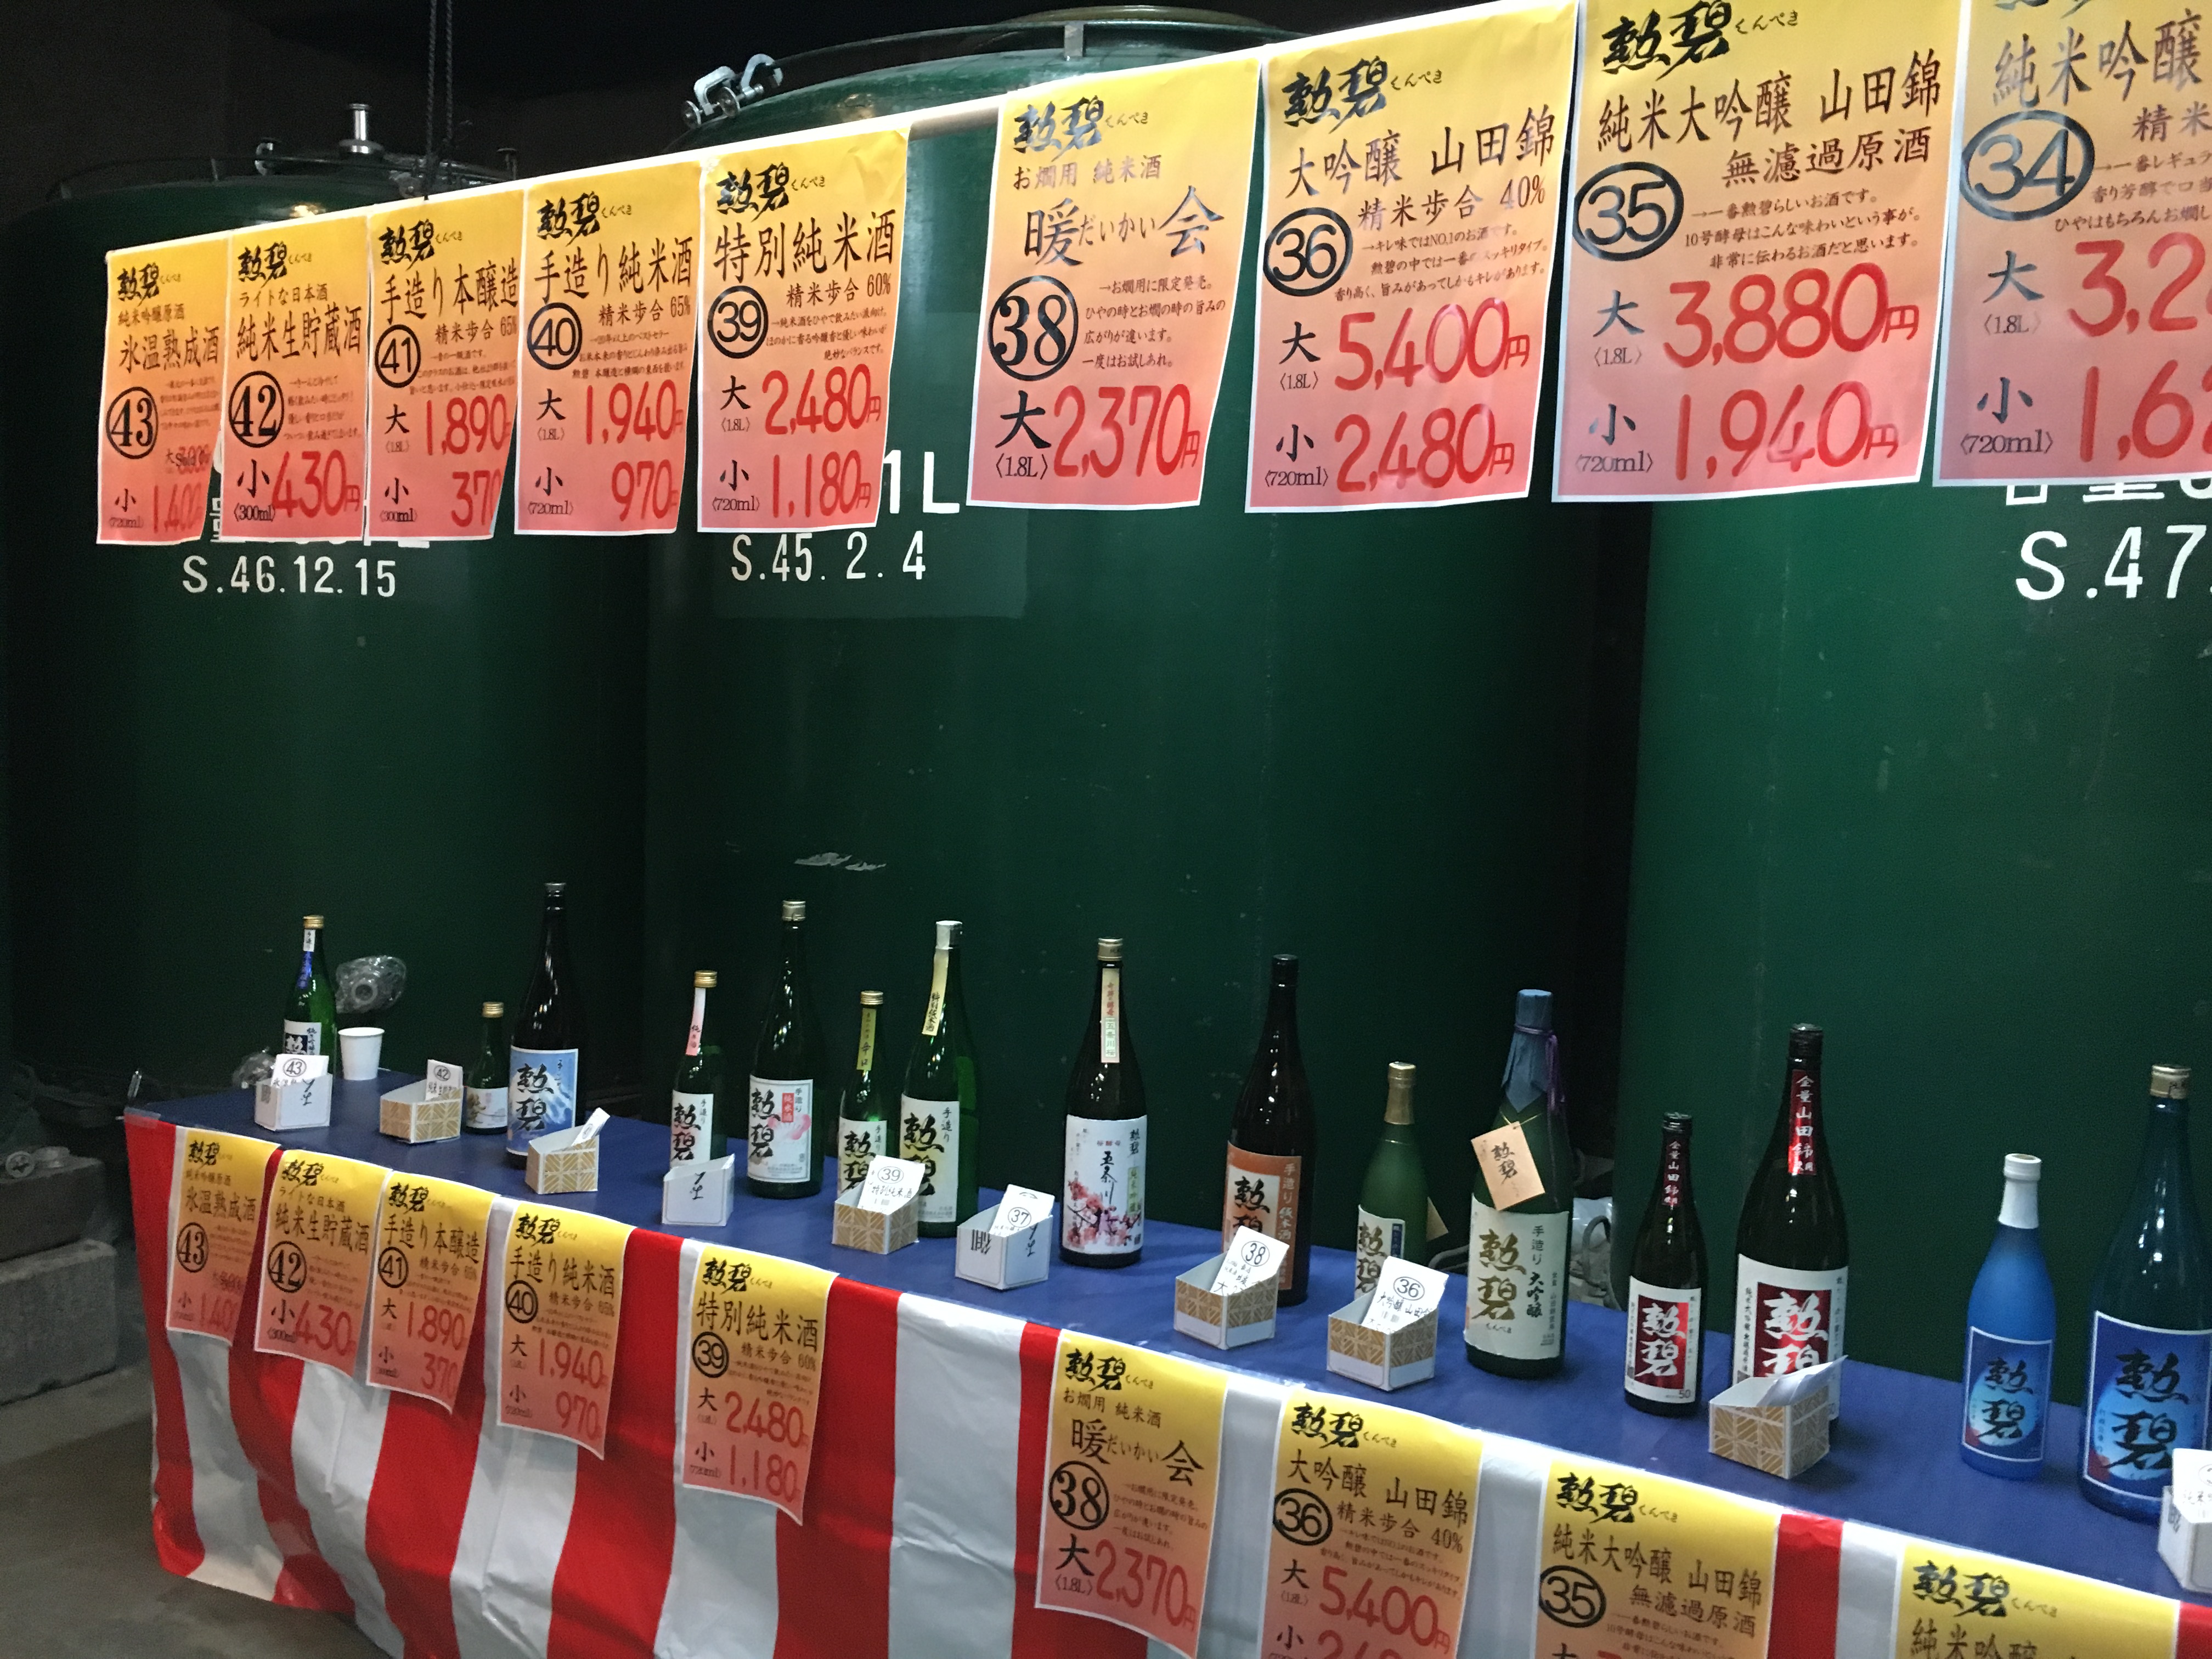 １０種類の日本酒を呑み比べられる！勲碧酒造の酒蔵開放はまさにお祭り！